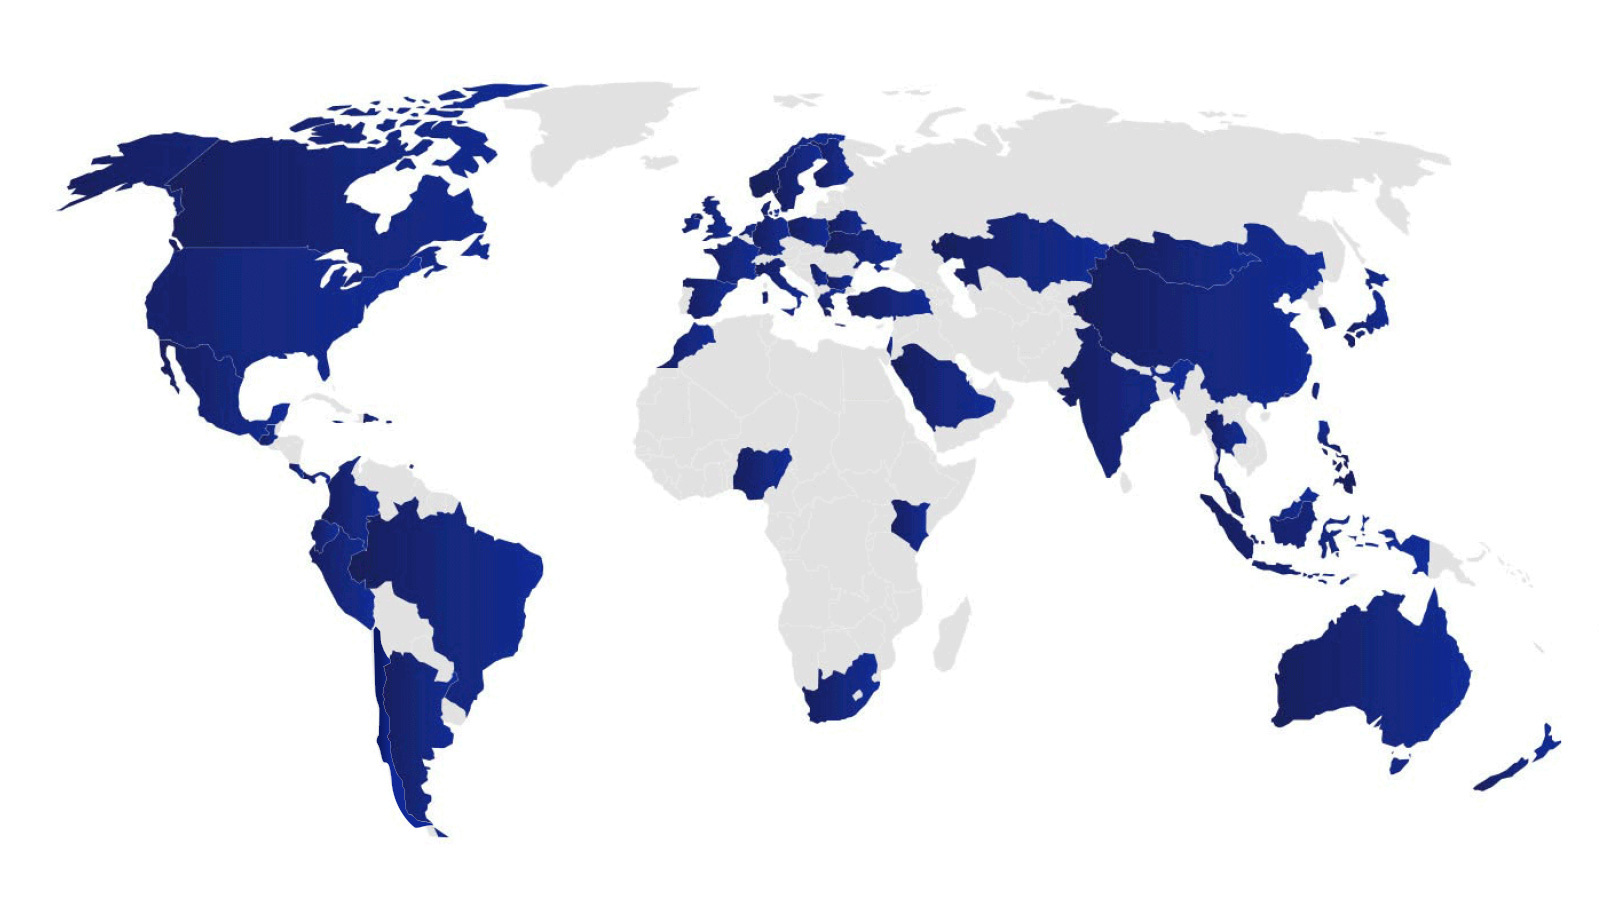 Mapa que indica los países con atletas del Team Visa